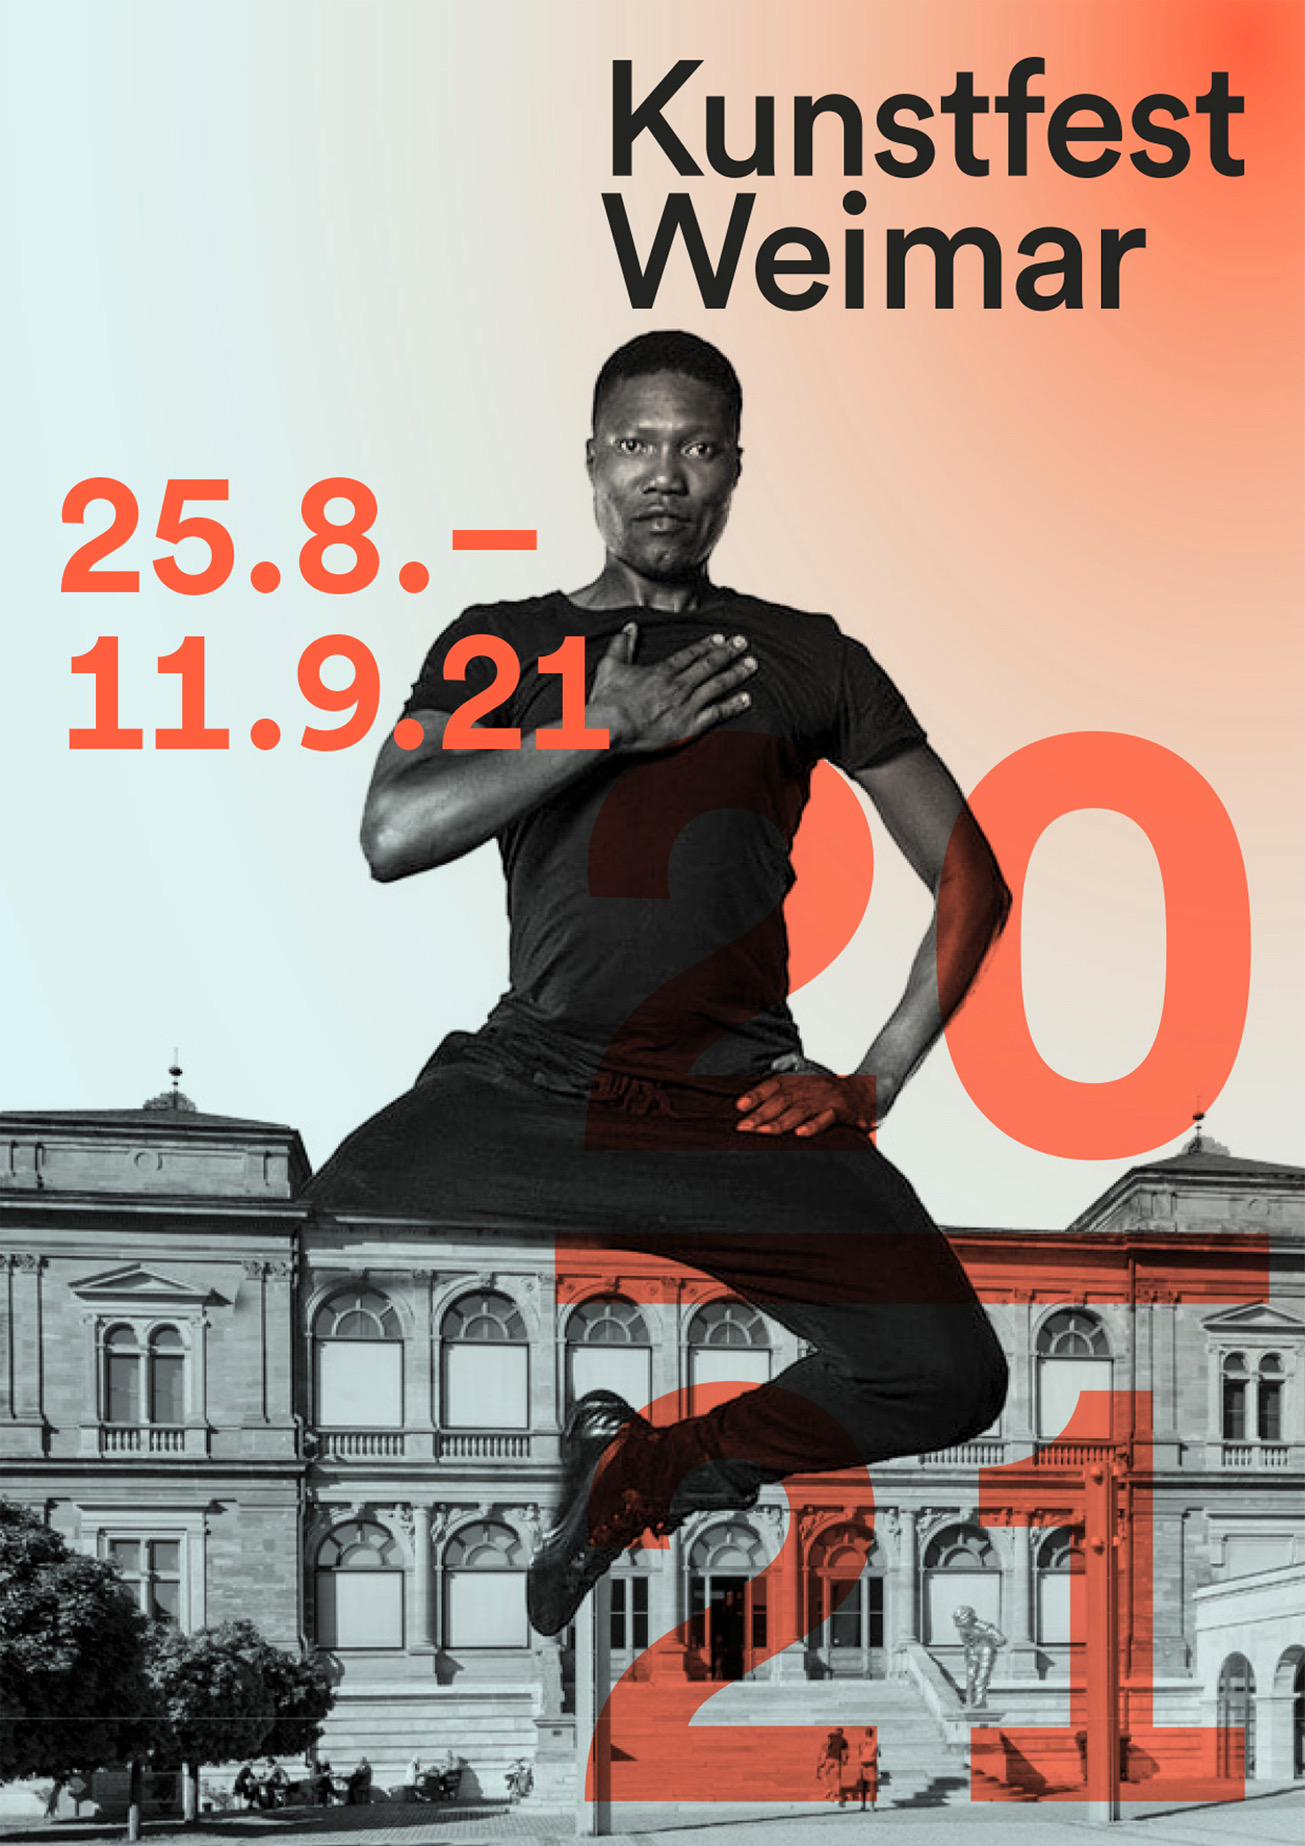 Das Kunstfest Weimar ist ein führendes Kunstfestival. Die Stadt wird zur Bühne für internationale Theateraufführungen, Konzerte, Literatur, Film und bildende Kunst. Unser grafisches Konzept spielt mit Irritation, schafft neue Perspektiven durch kreative Collagen mit surrealen Größenverhältnissen.